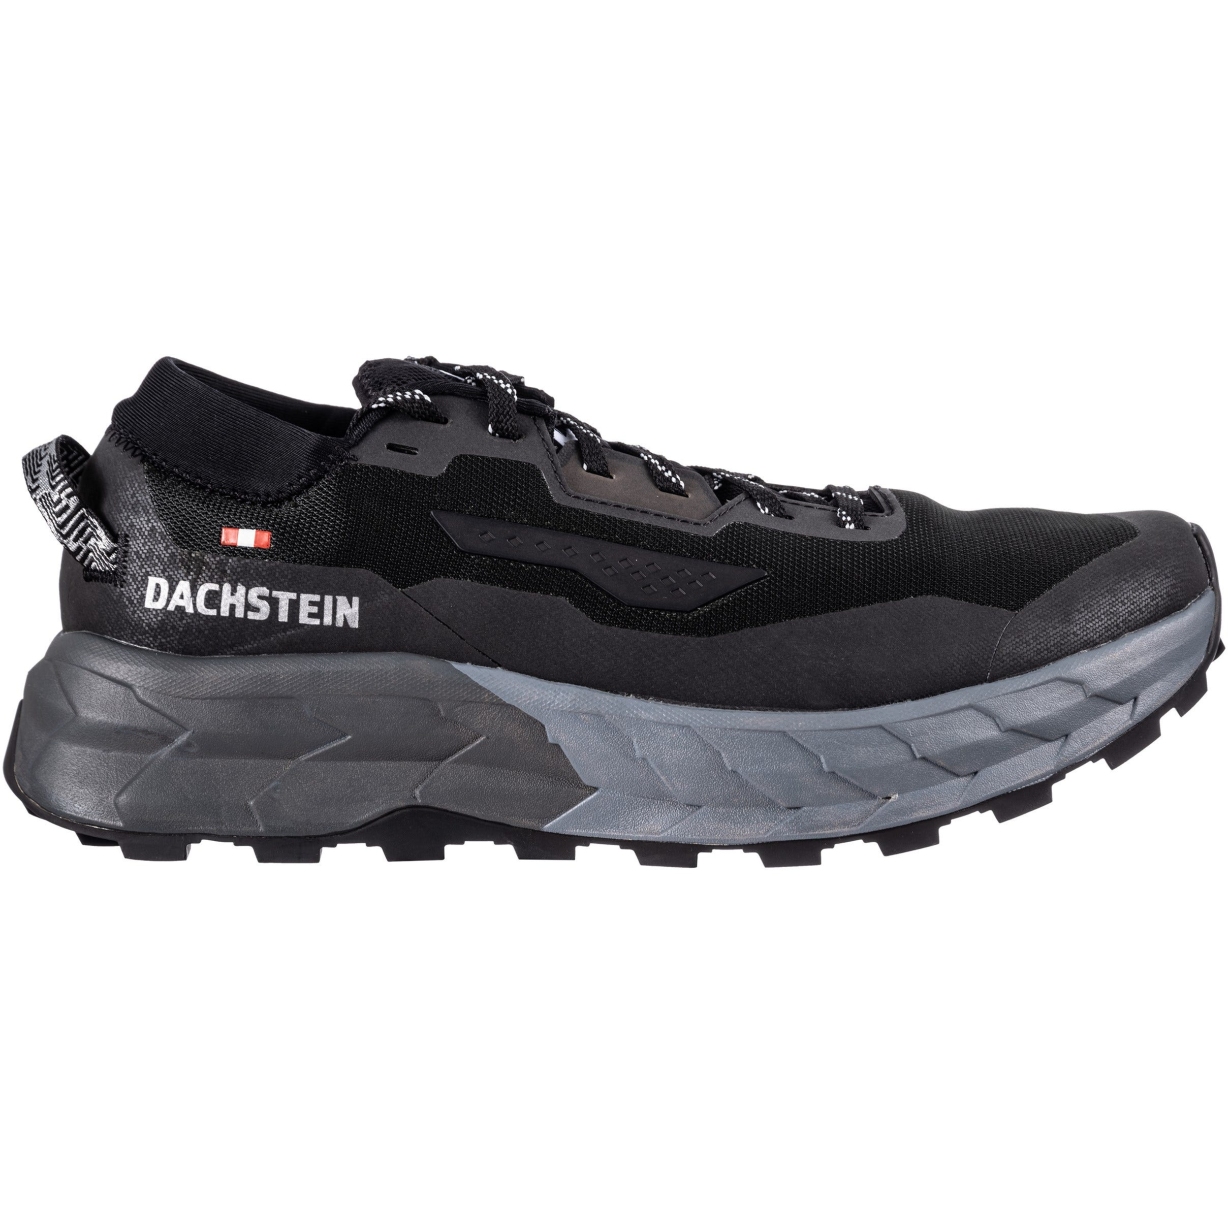 Produktbild von Dachstein X-Trail 01 Speedhiking Schuhe Herren - schwarz